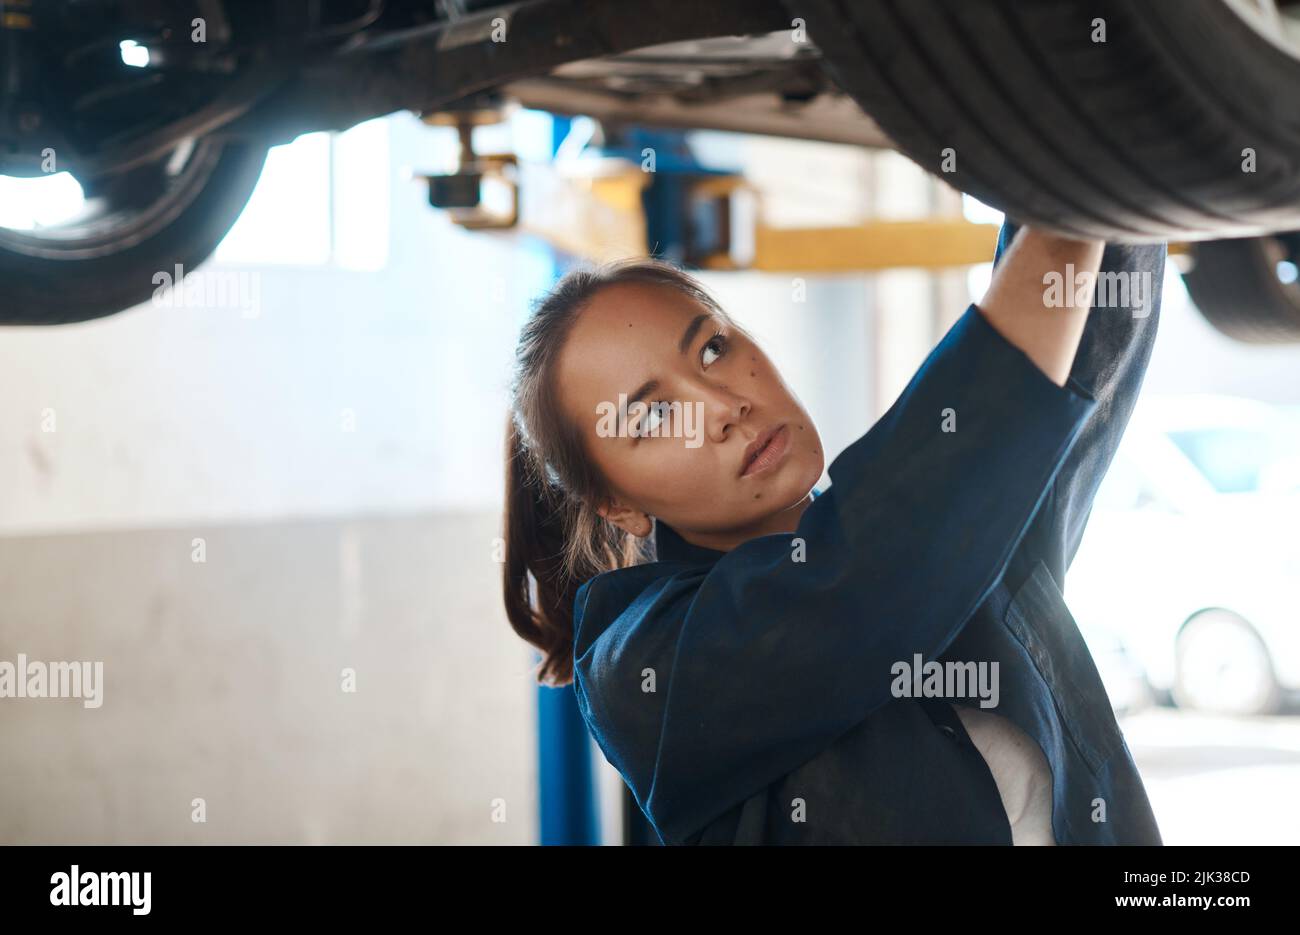 Probleme zu erkennen und Reparaturen durchzuführen, ist das, was ich tue. Eine Mechanikerin, die unter einem angehobenen Auto arbeitet. Stockfoto